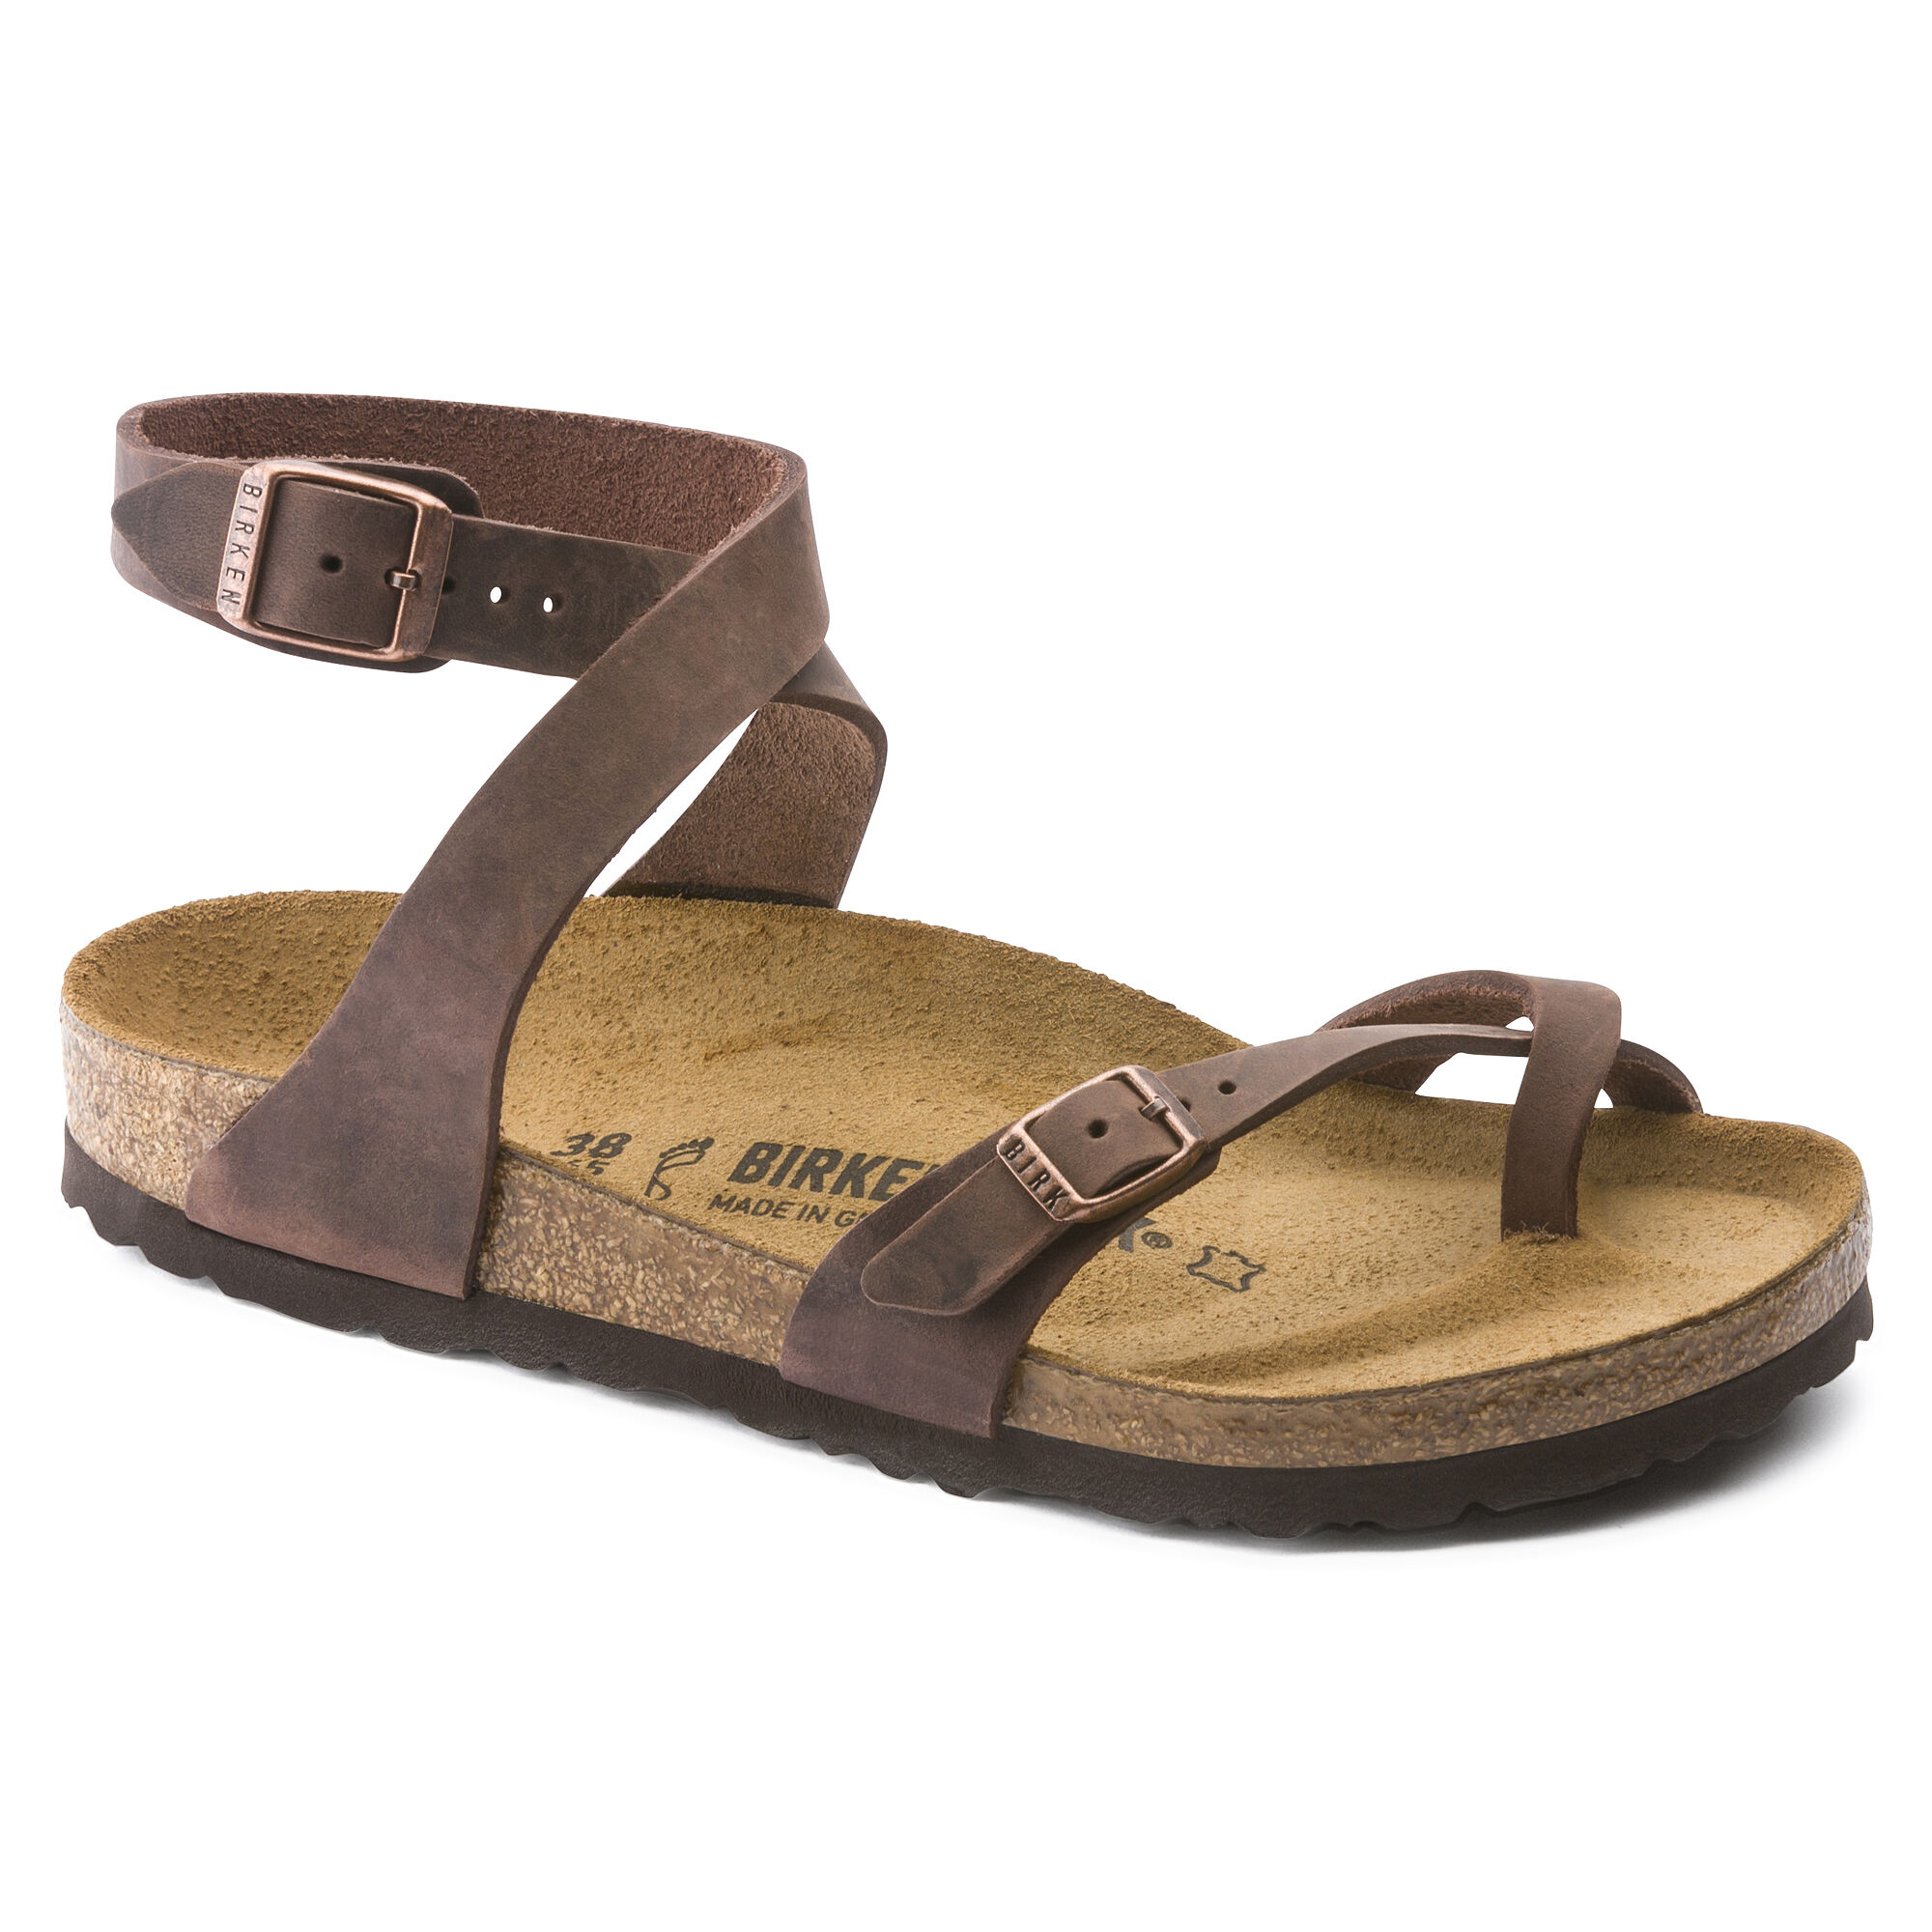 birkenstock sandals with heel straps